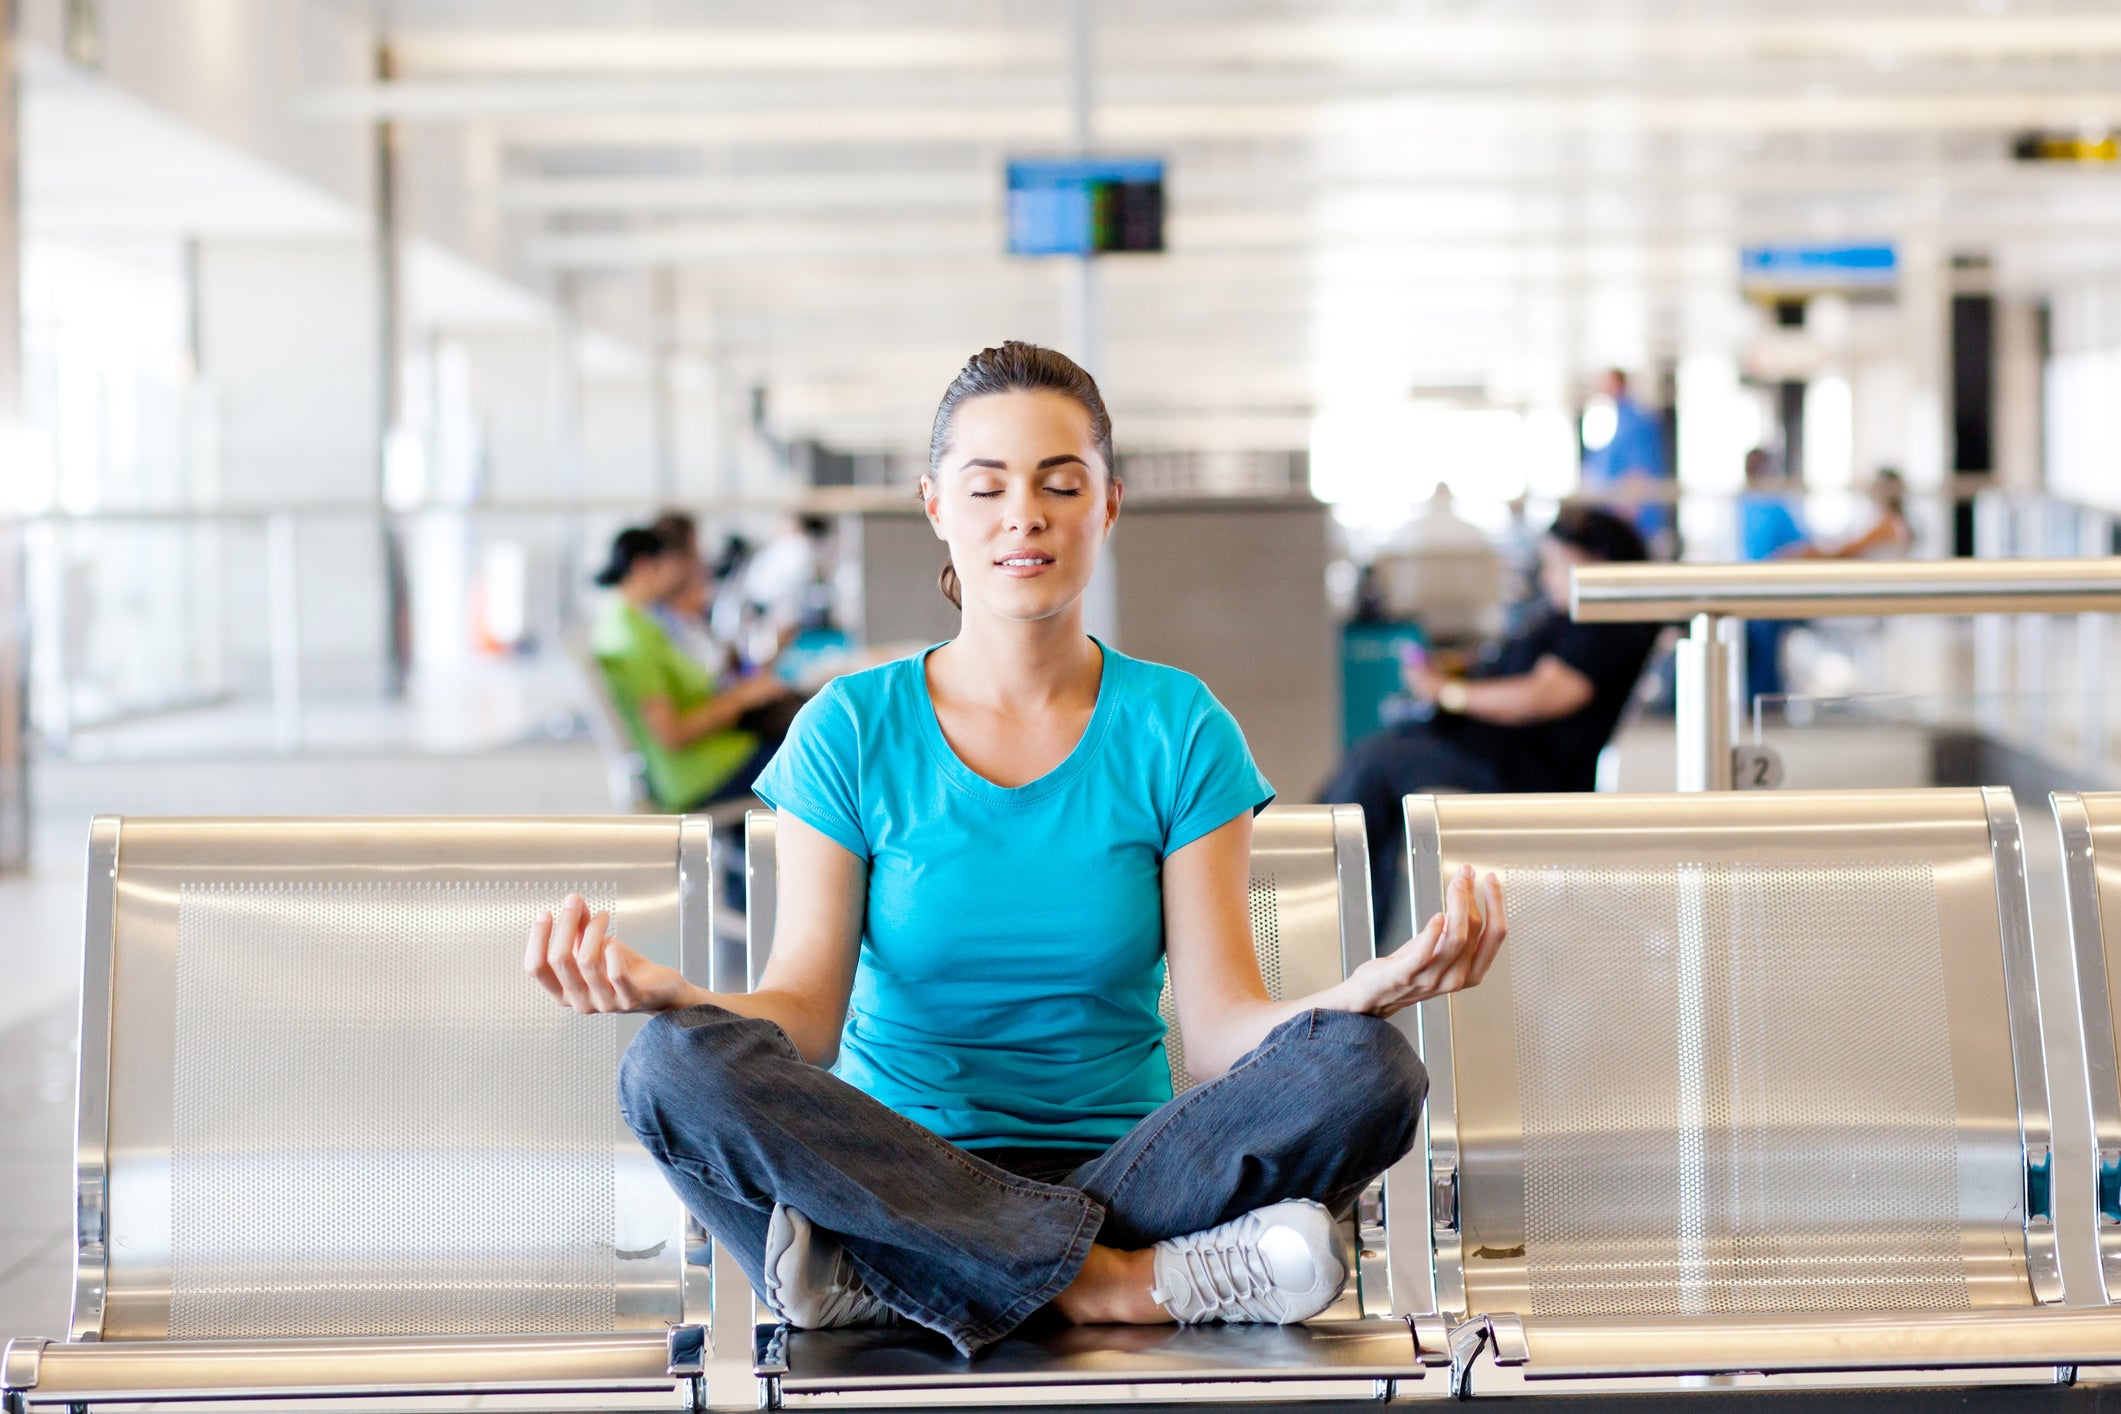 Woman meditates at airport